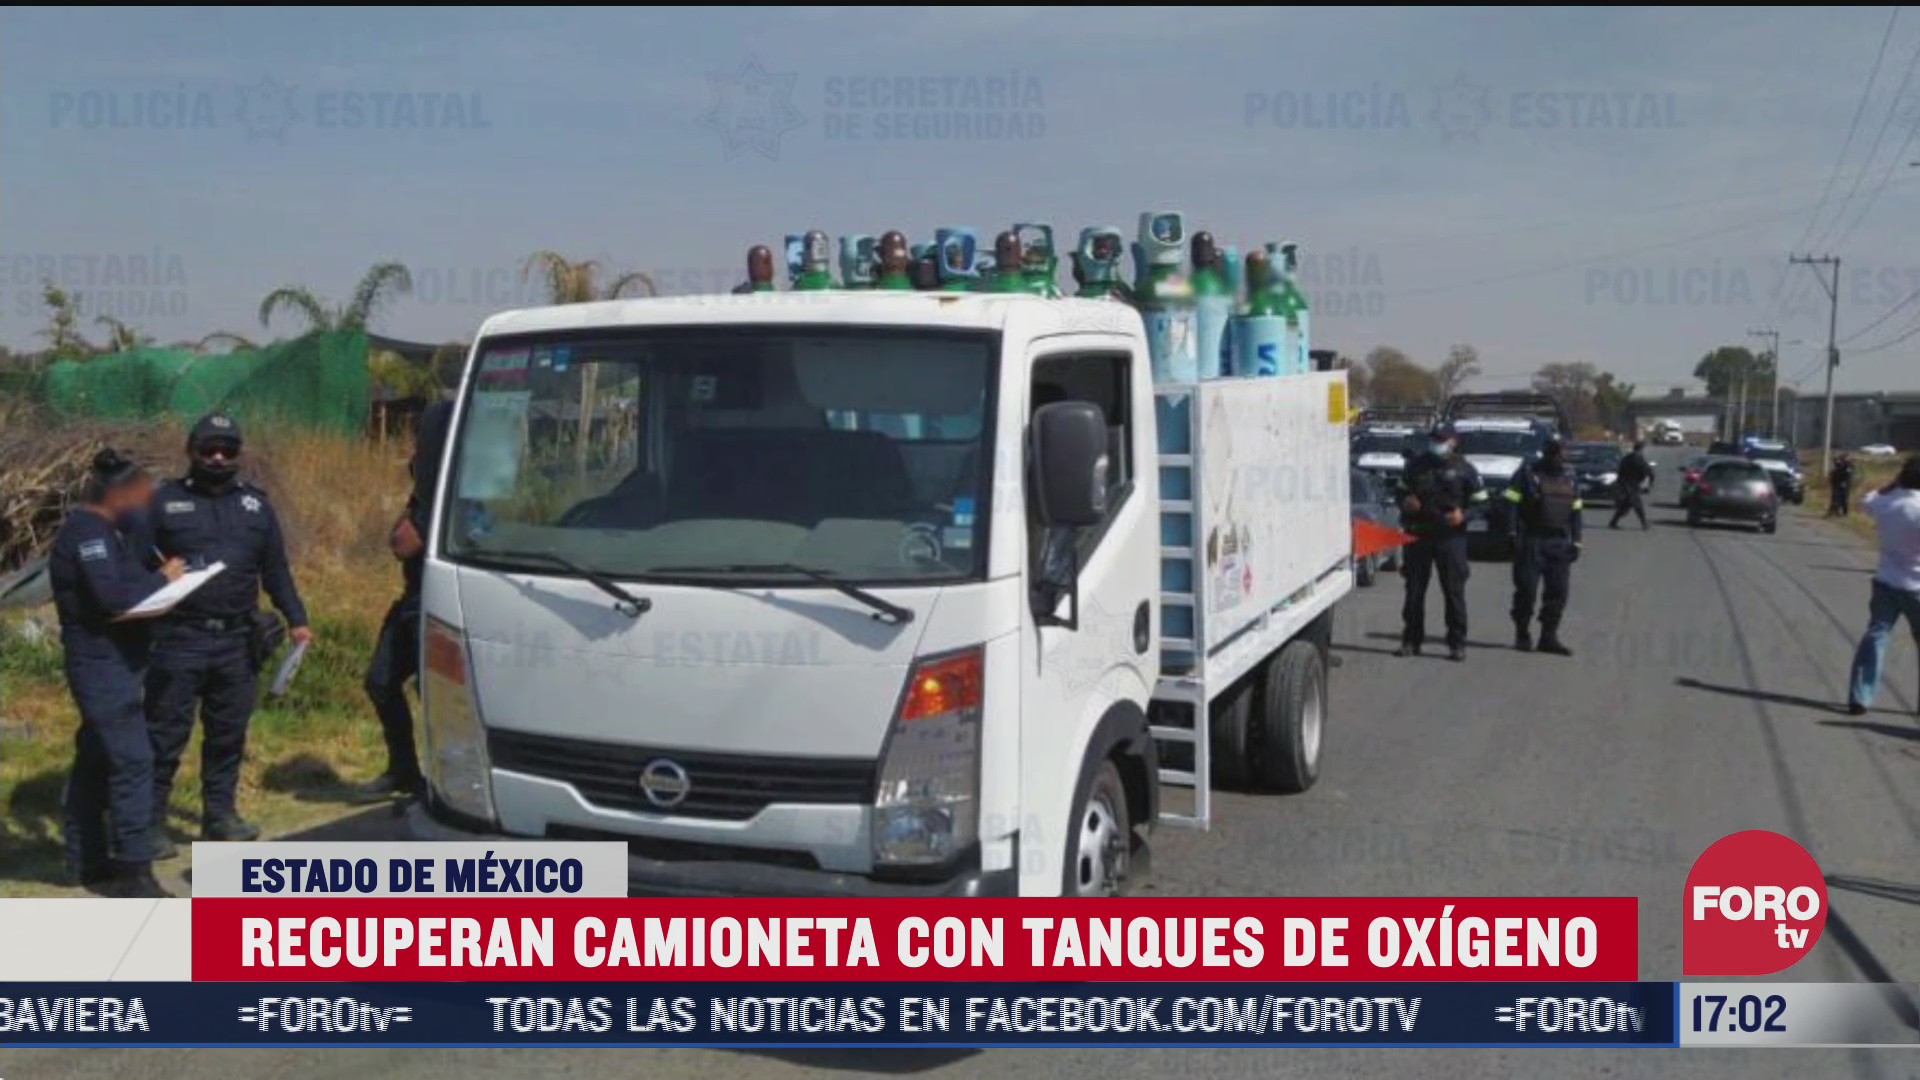 se roban camioneta con 45 tanques de oxigeno en el estado de mexico